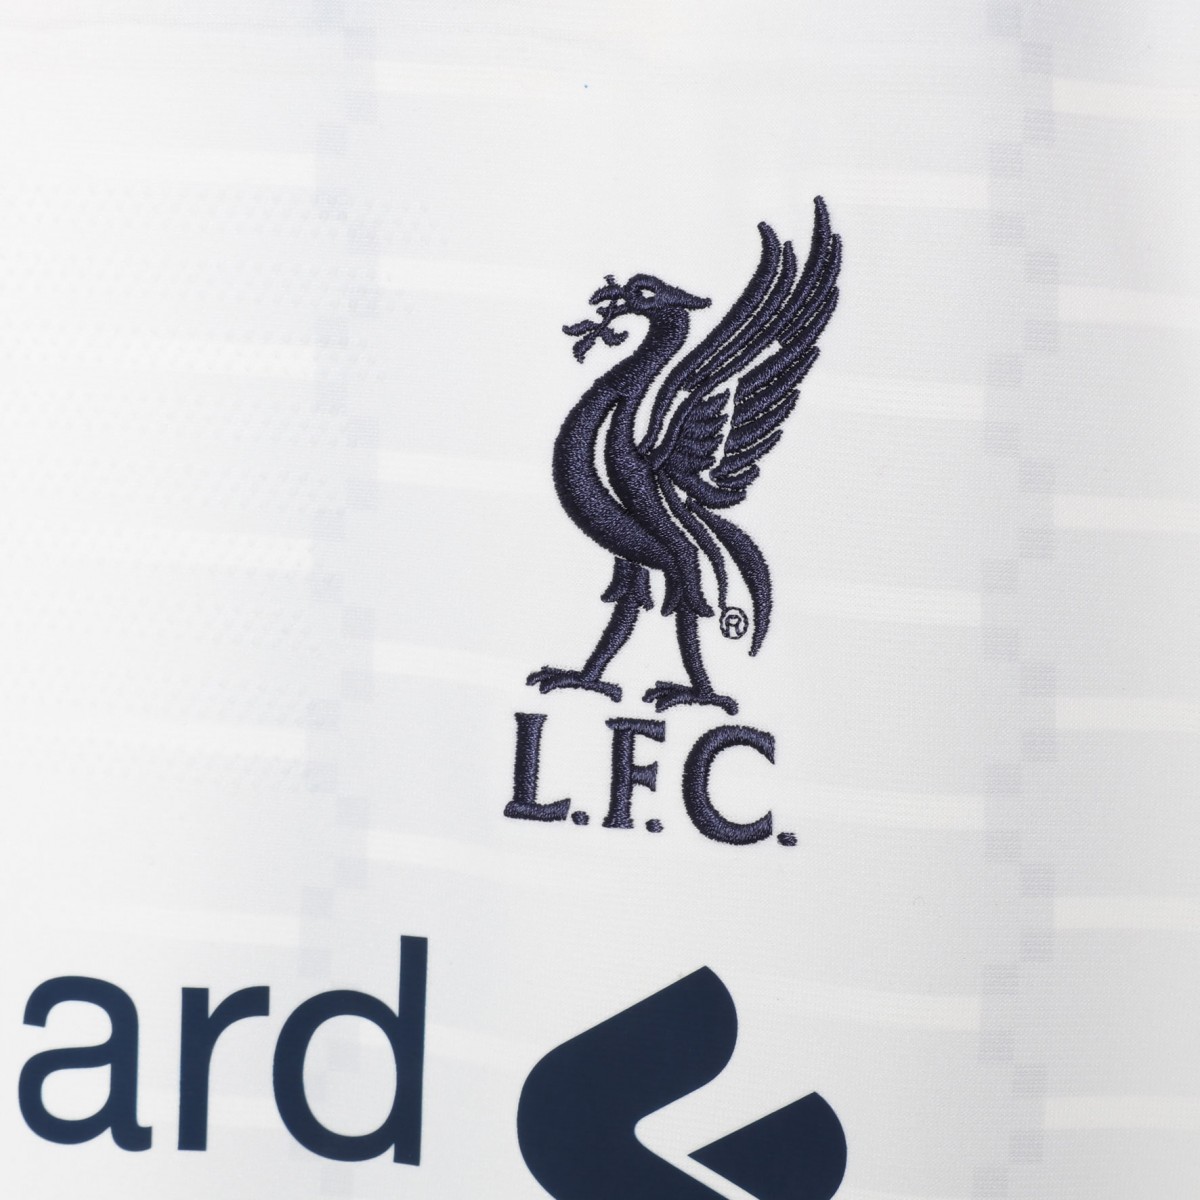 Liverpool 19-20 Away Kit Released - Footy Headlines